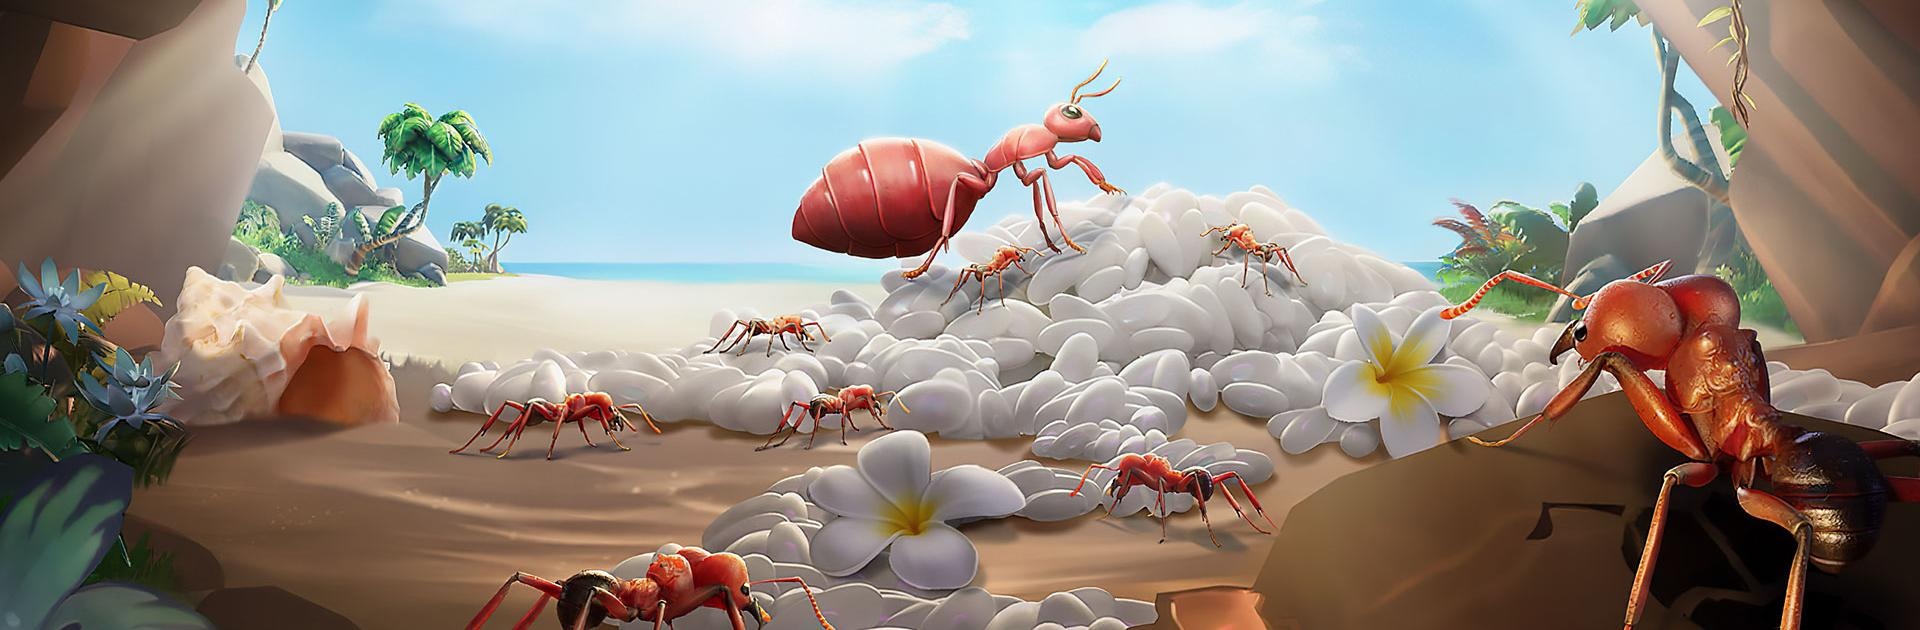 Ant Art Tycoon Unblocked